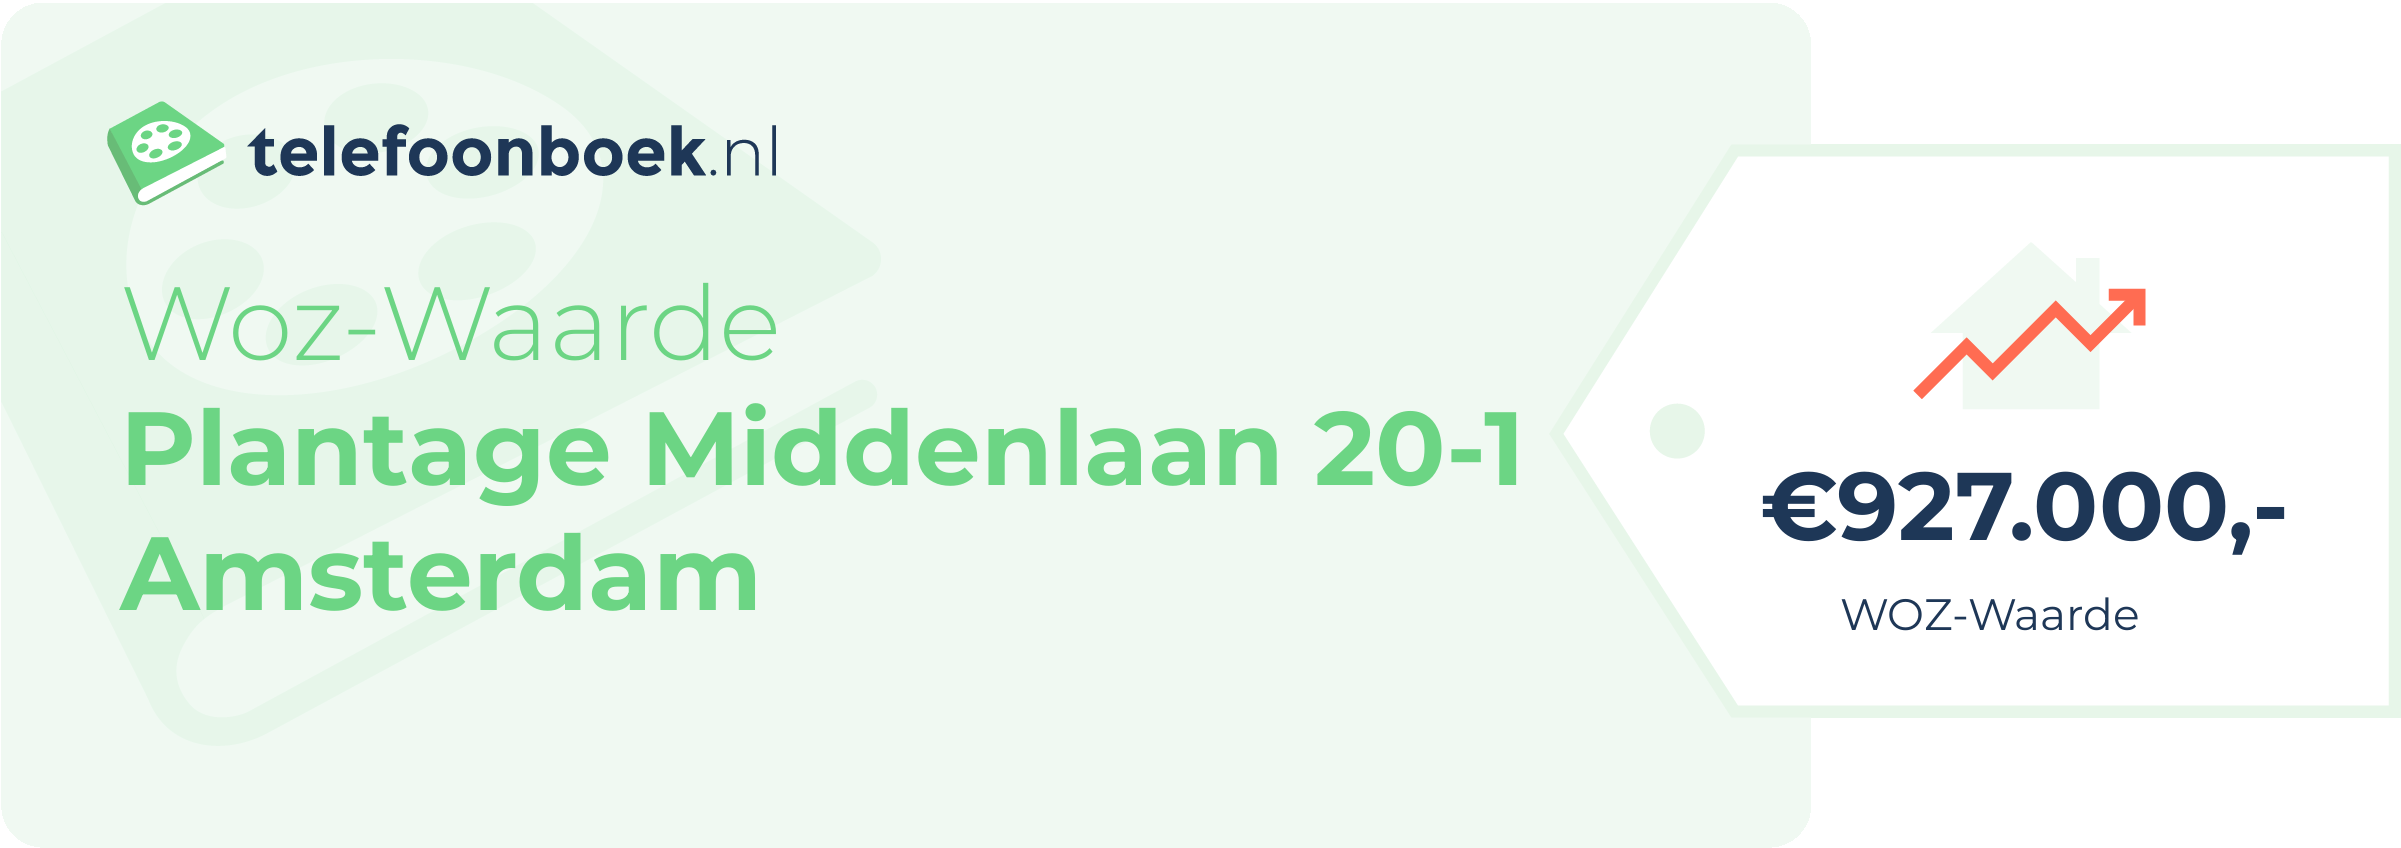 WOZ-waarde Plantage Middenlaan 20-1 Amsterdam